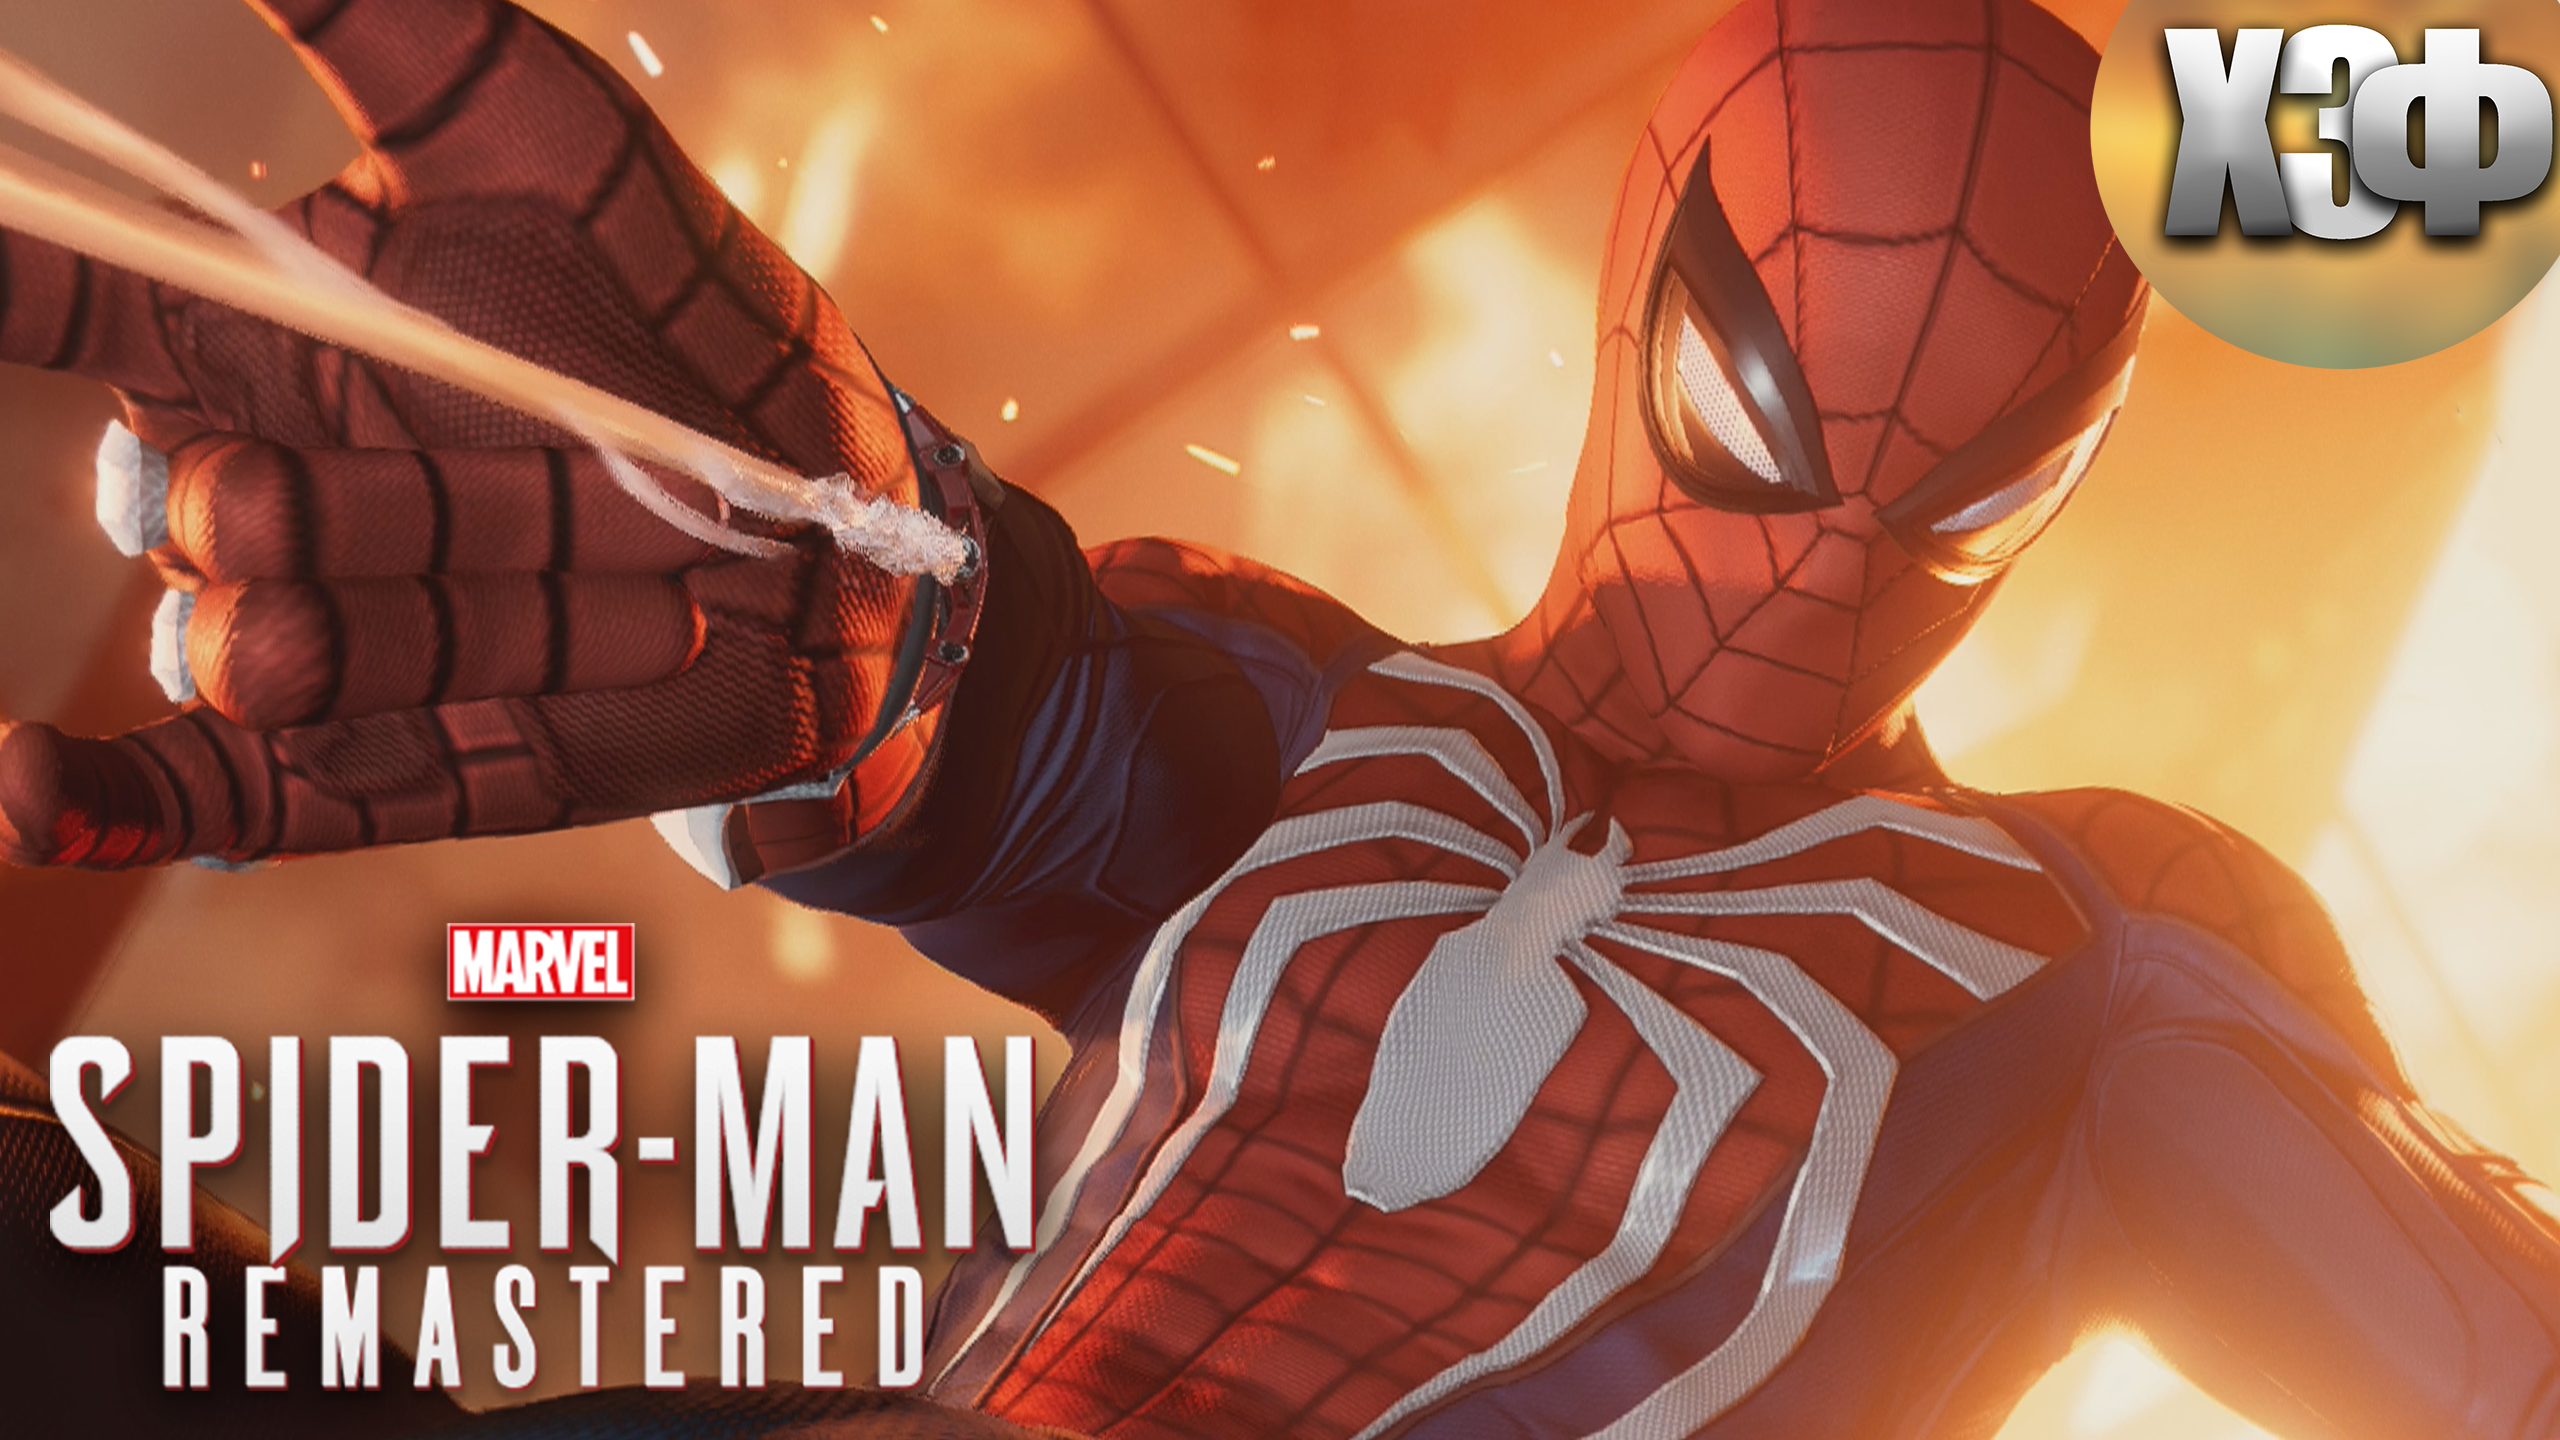 ПОЖАР В ВЕТЕРАНСКОМ ЦЕНТРЕ / Marvels Spider Man Remastered #15